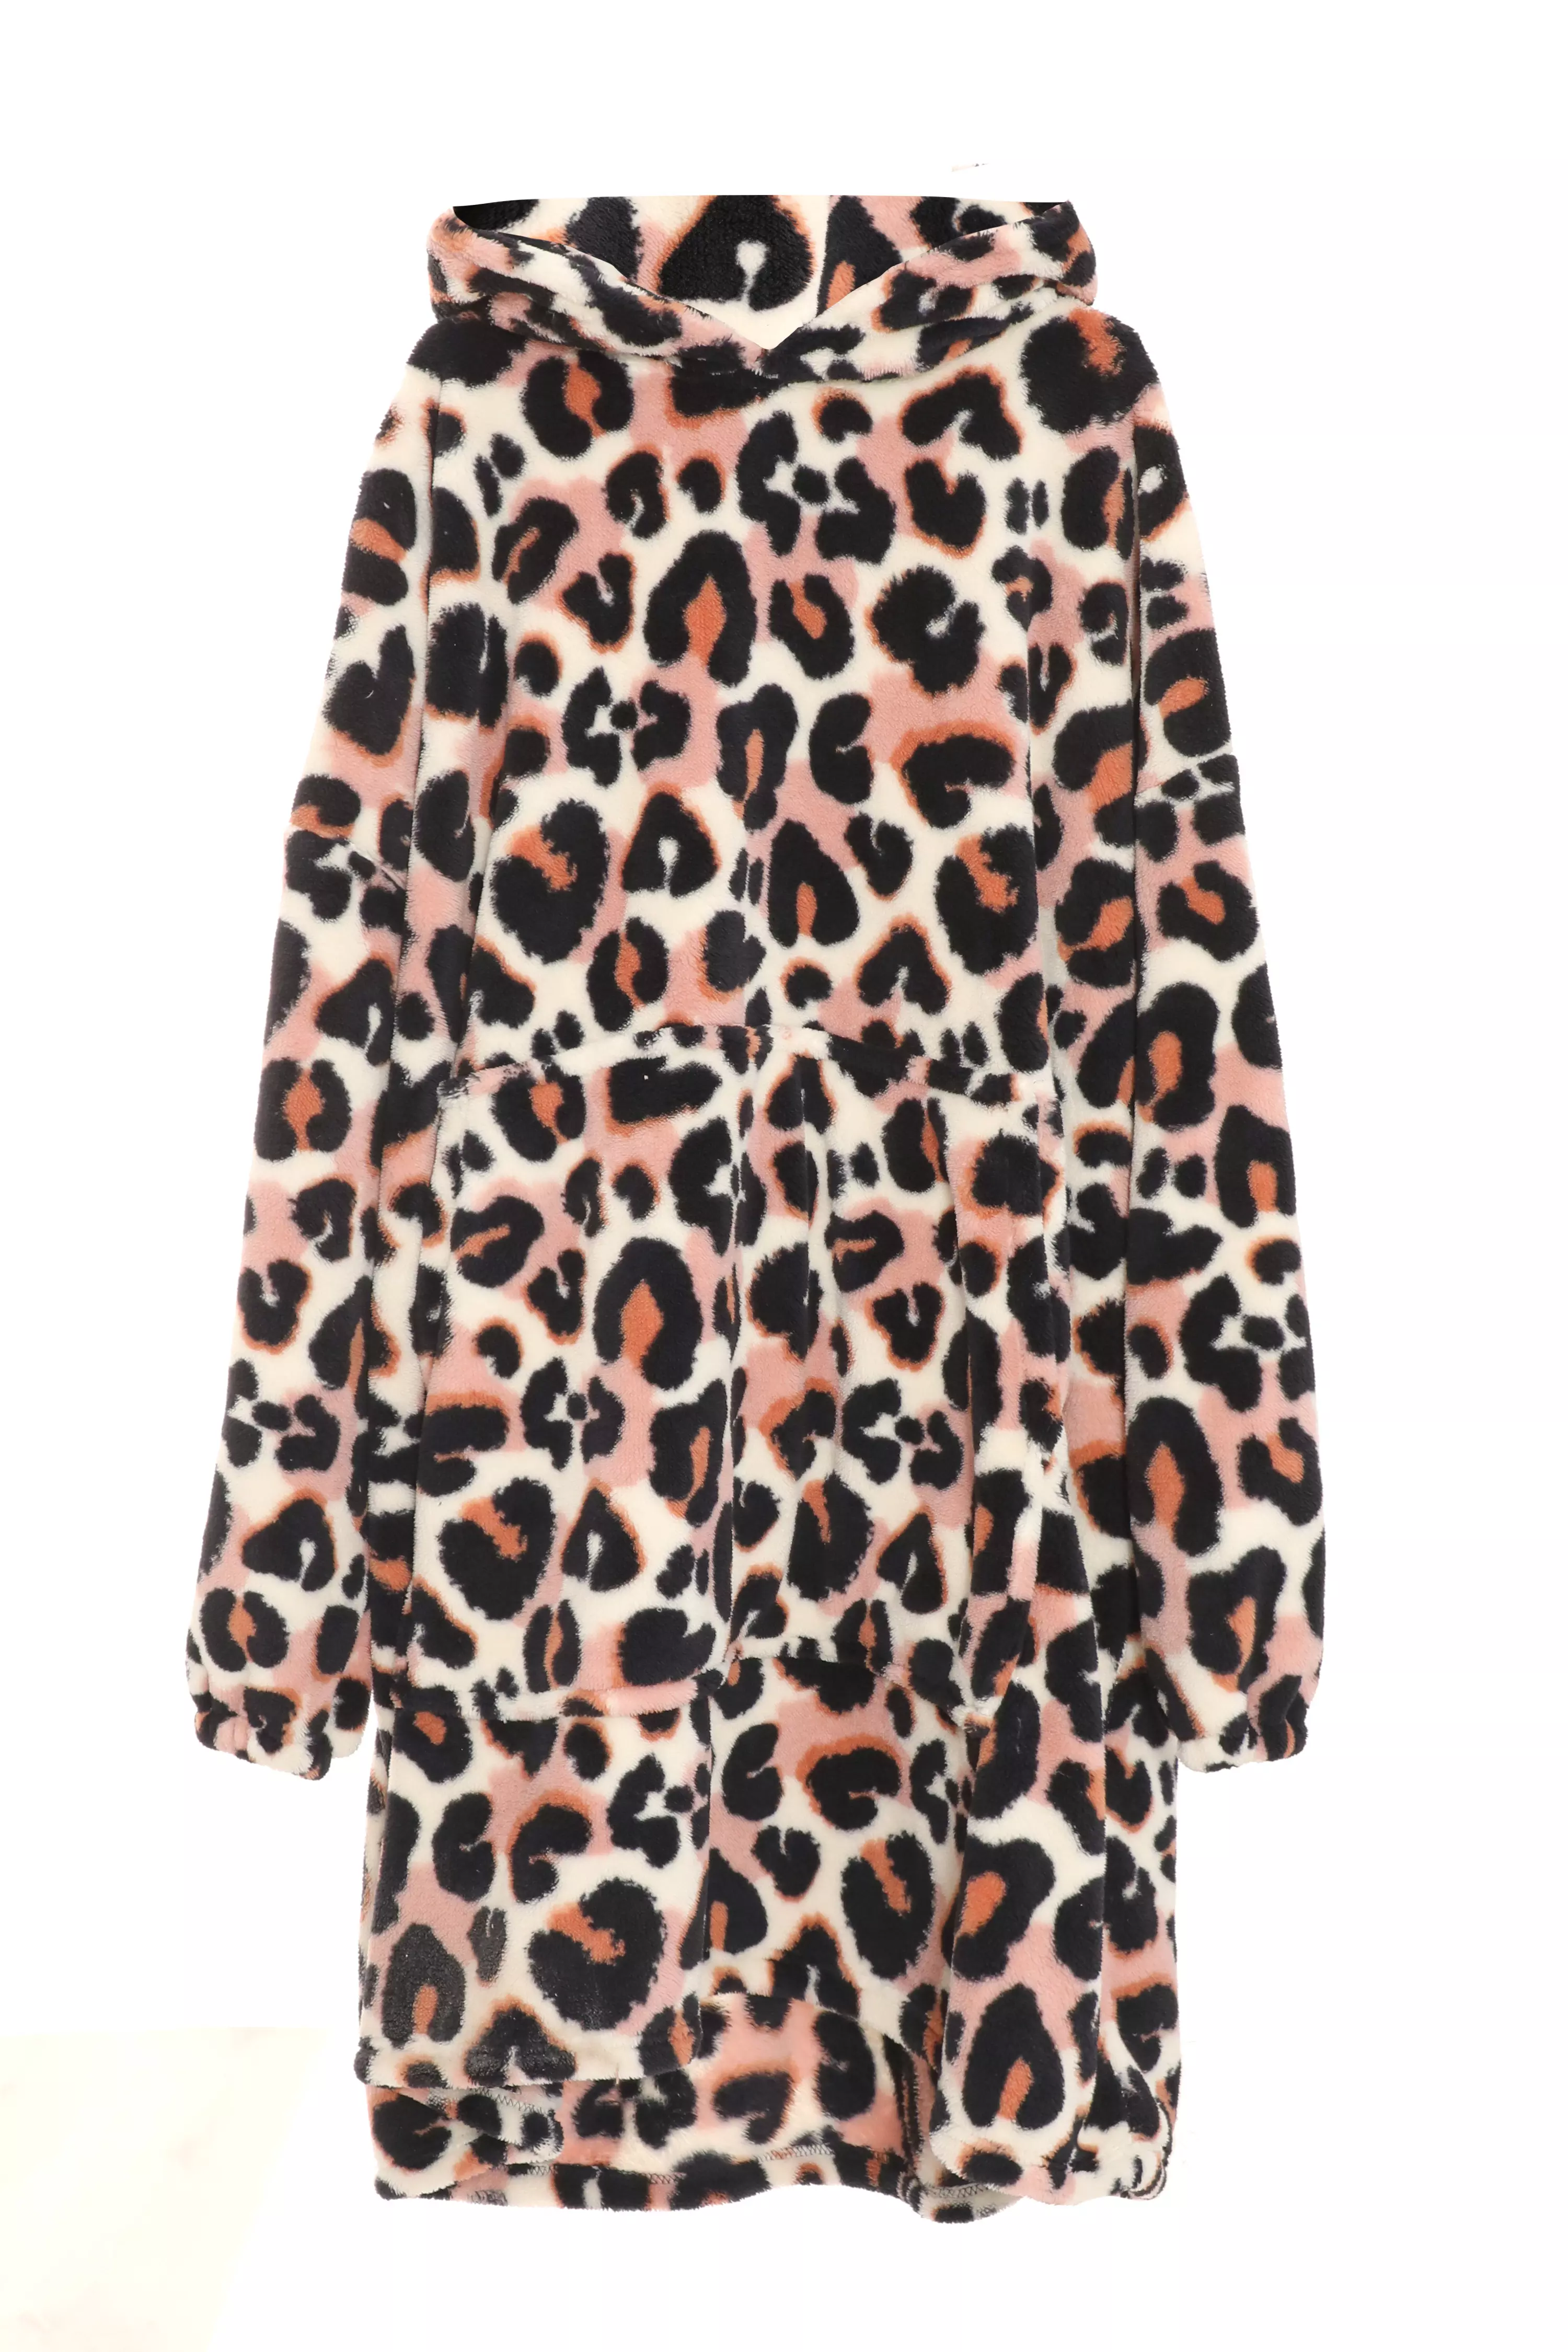 Brown Leopard Print Fleece Blanket Hoodie